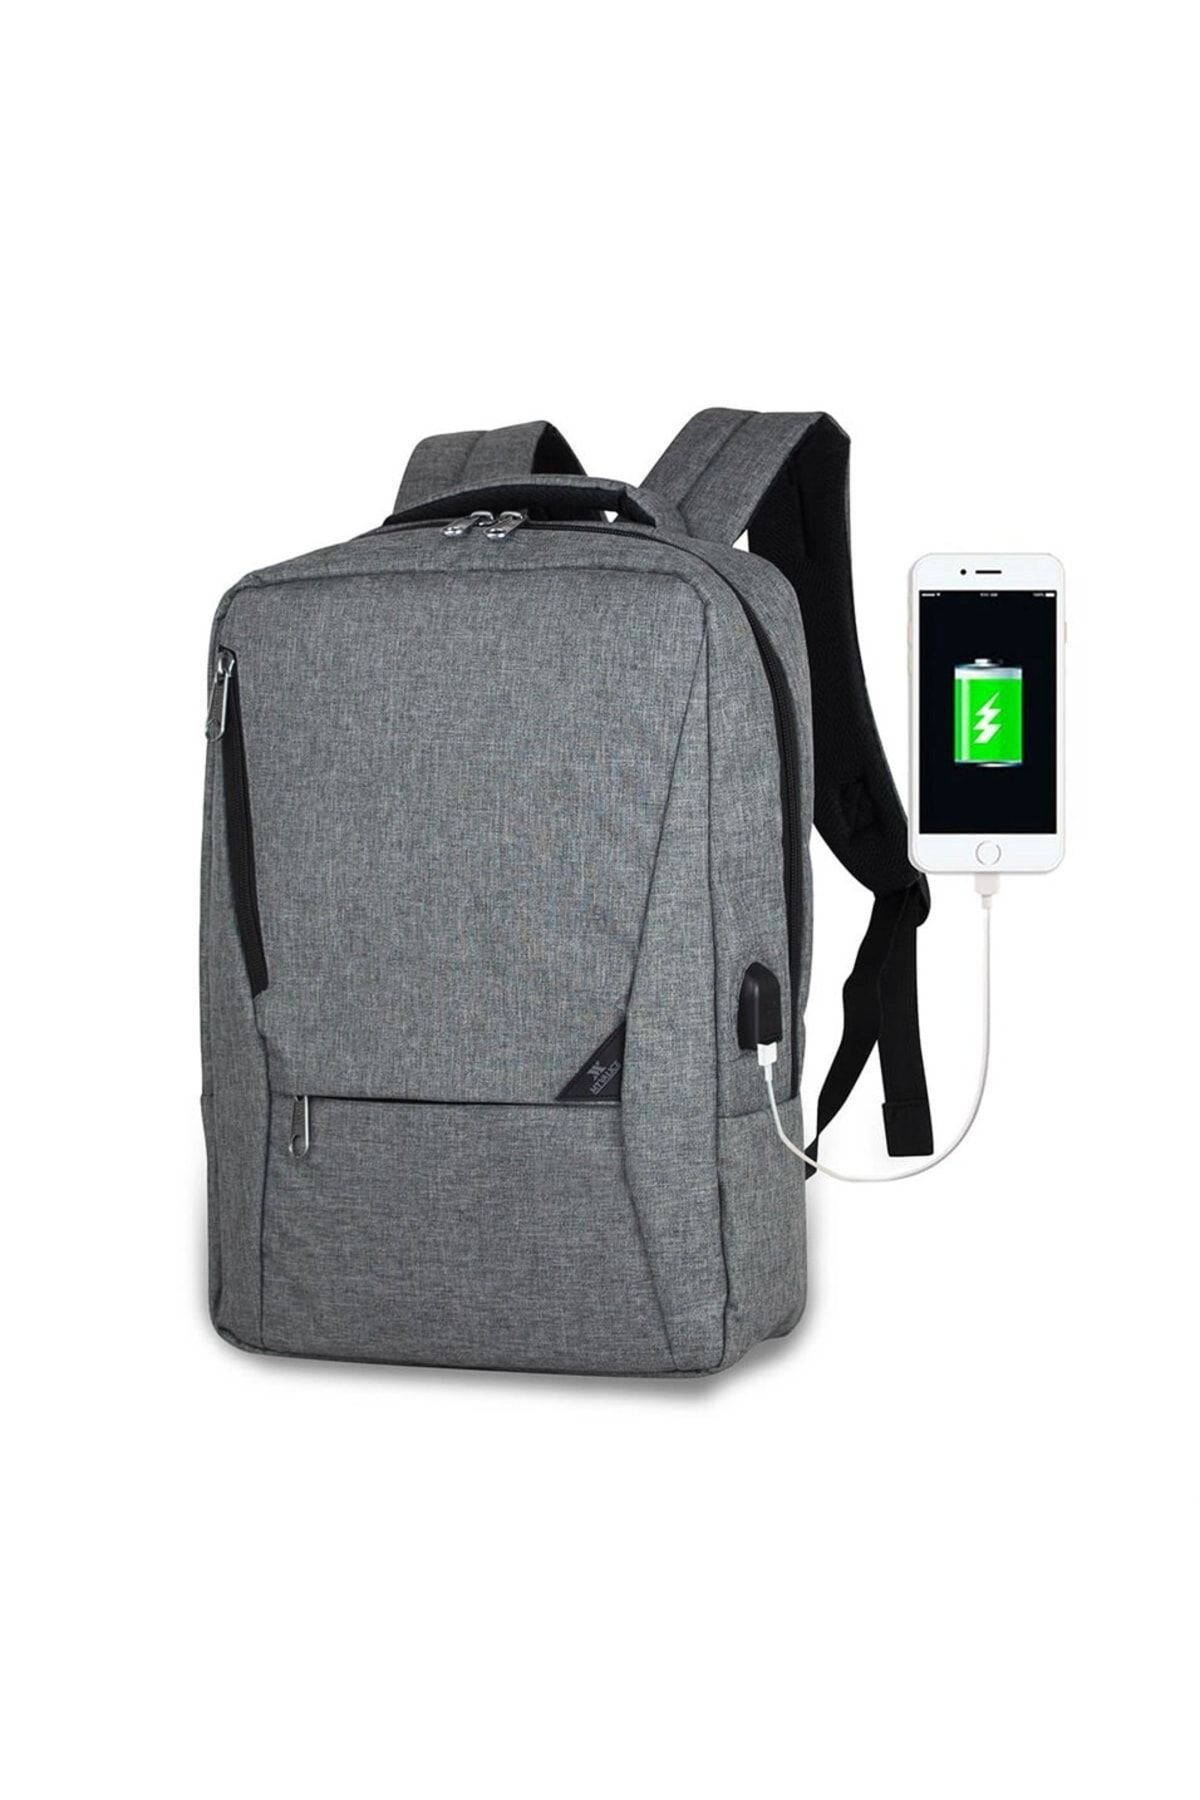 Smart Bag Active Usb Şarj Girişli Slim Notebook Laptop Sırt Çantası Gri